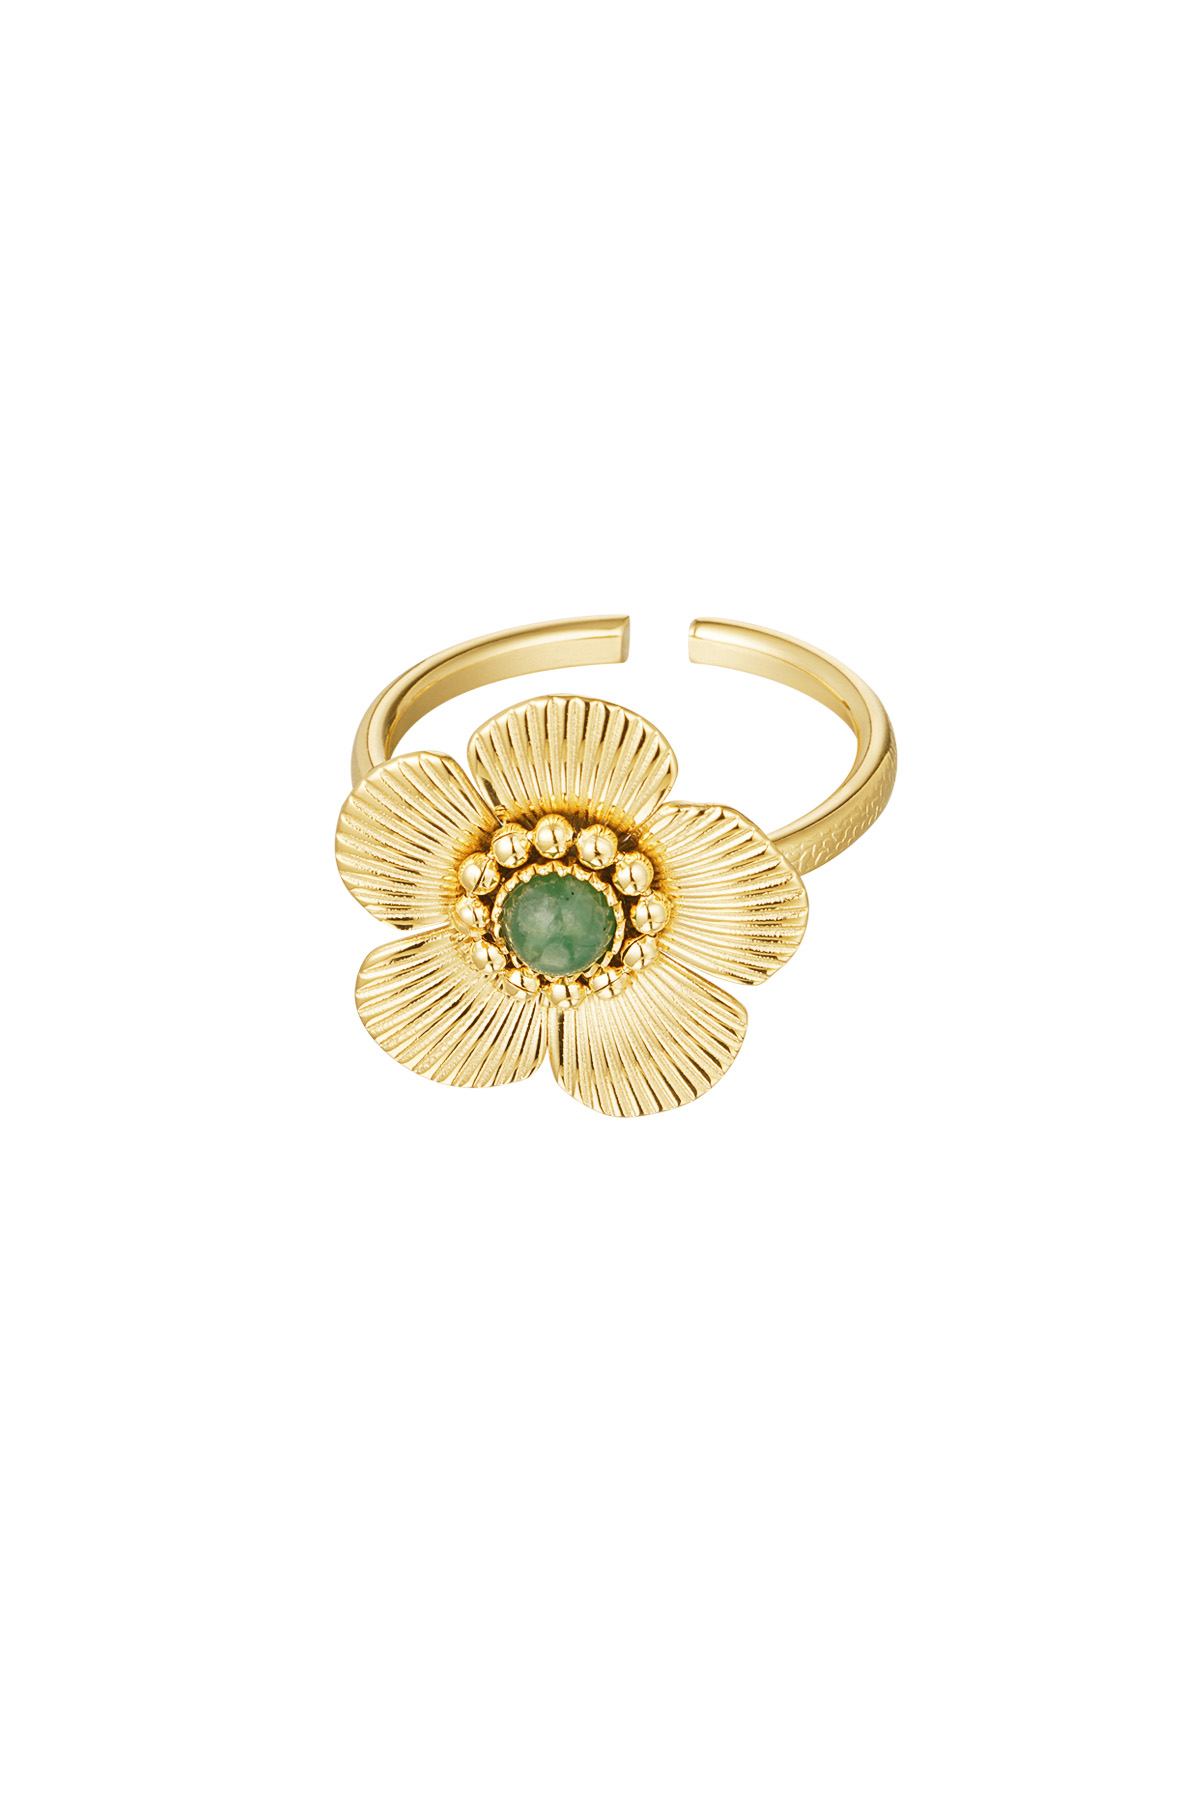 Ring bloem met steen - goud/groen